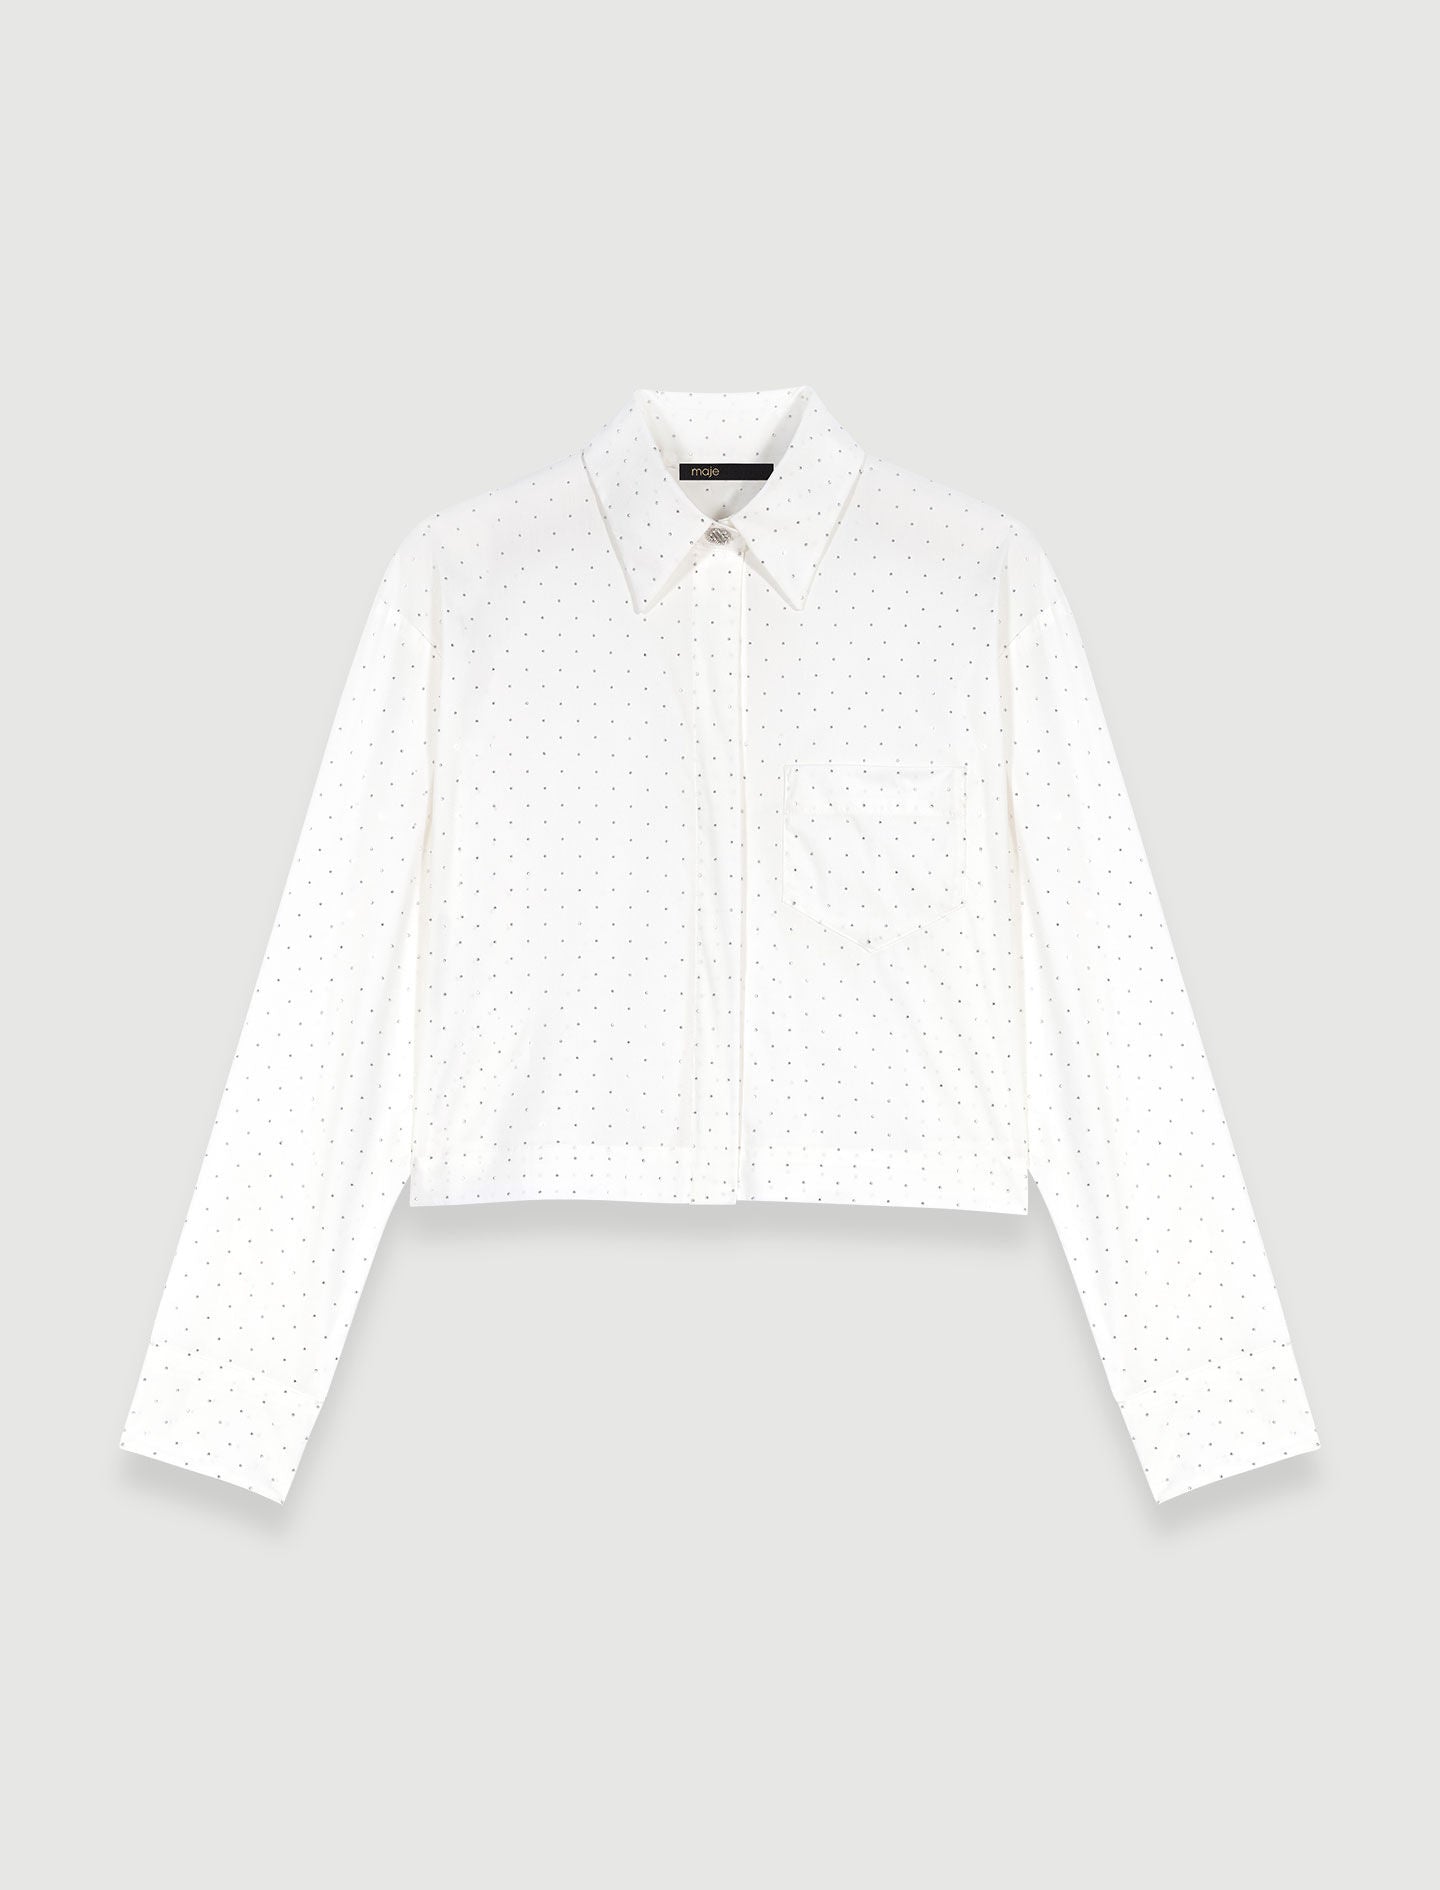 White rhinestone shirt